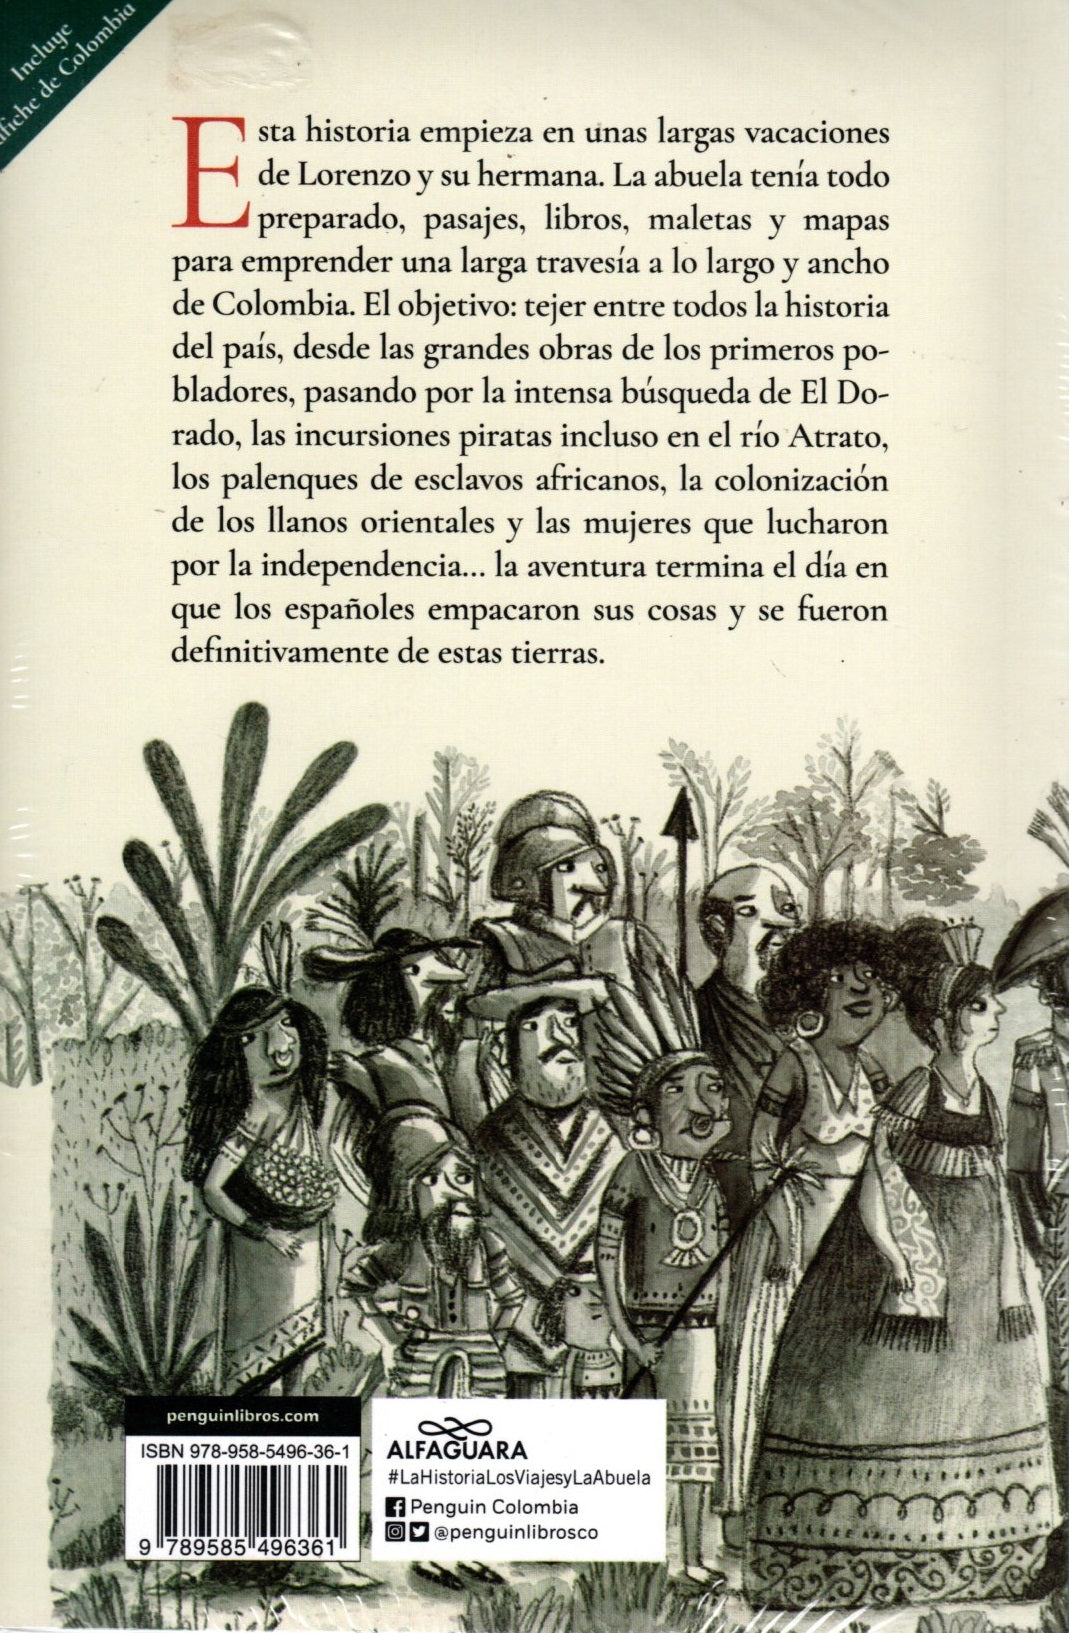 Libro Pilar Lozano - La historia, los viajes y la abuela